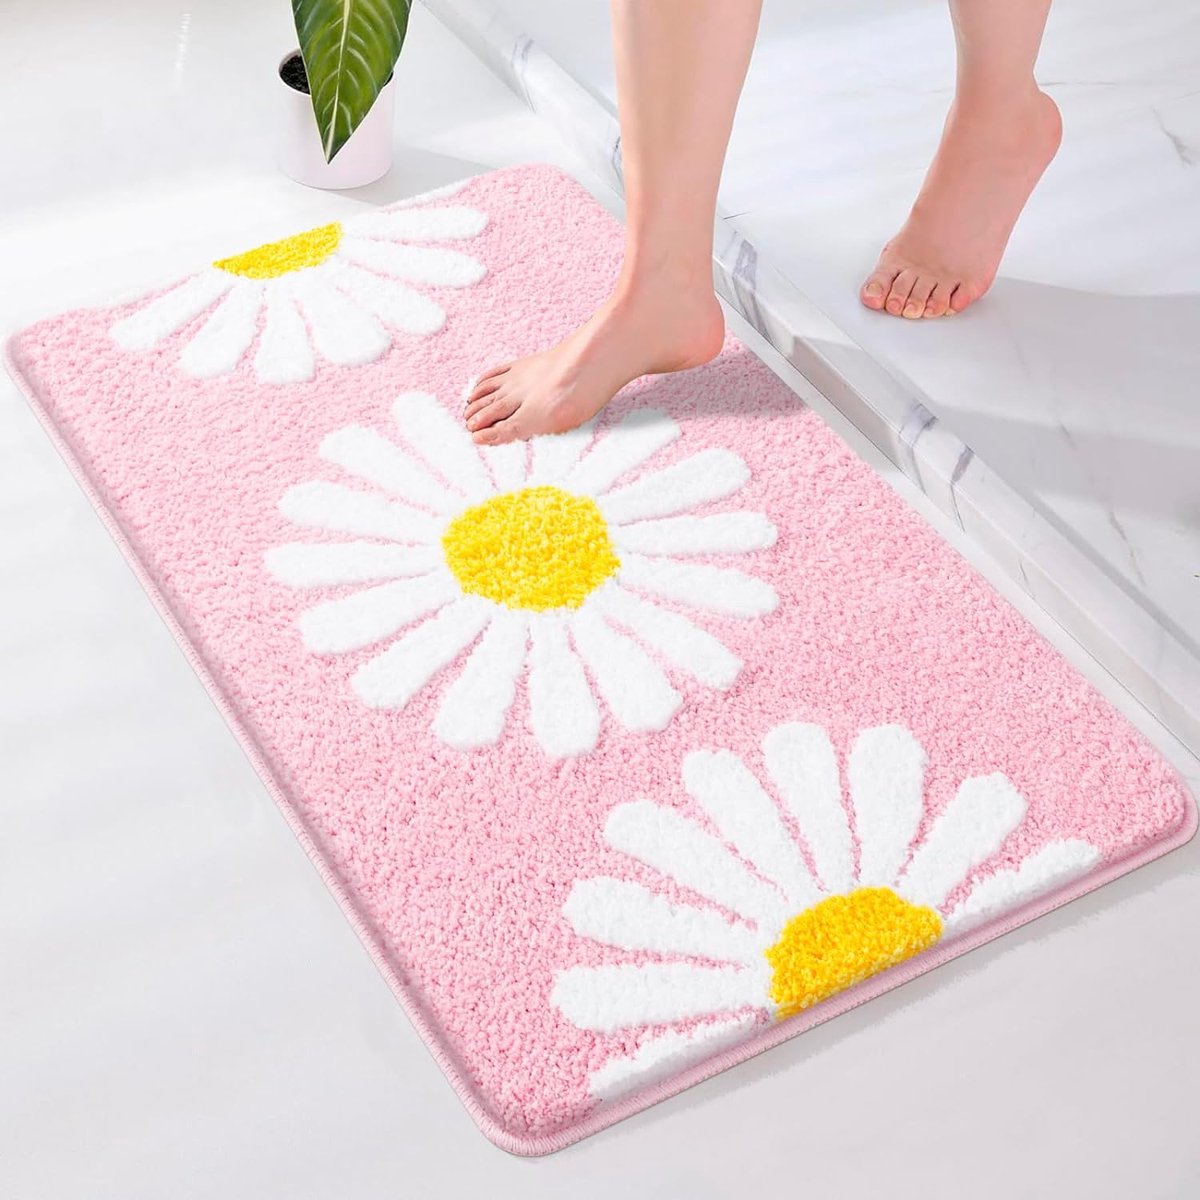 Badkamertapijt, antislip, wasbaar, 50 x 80 cm, badmat, absorberende badmat, zachte microvezel met madeliefjespatroon, roze